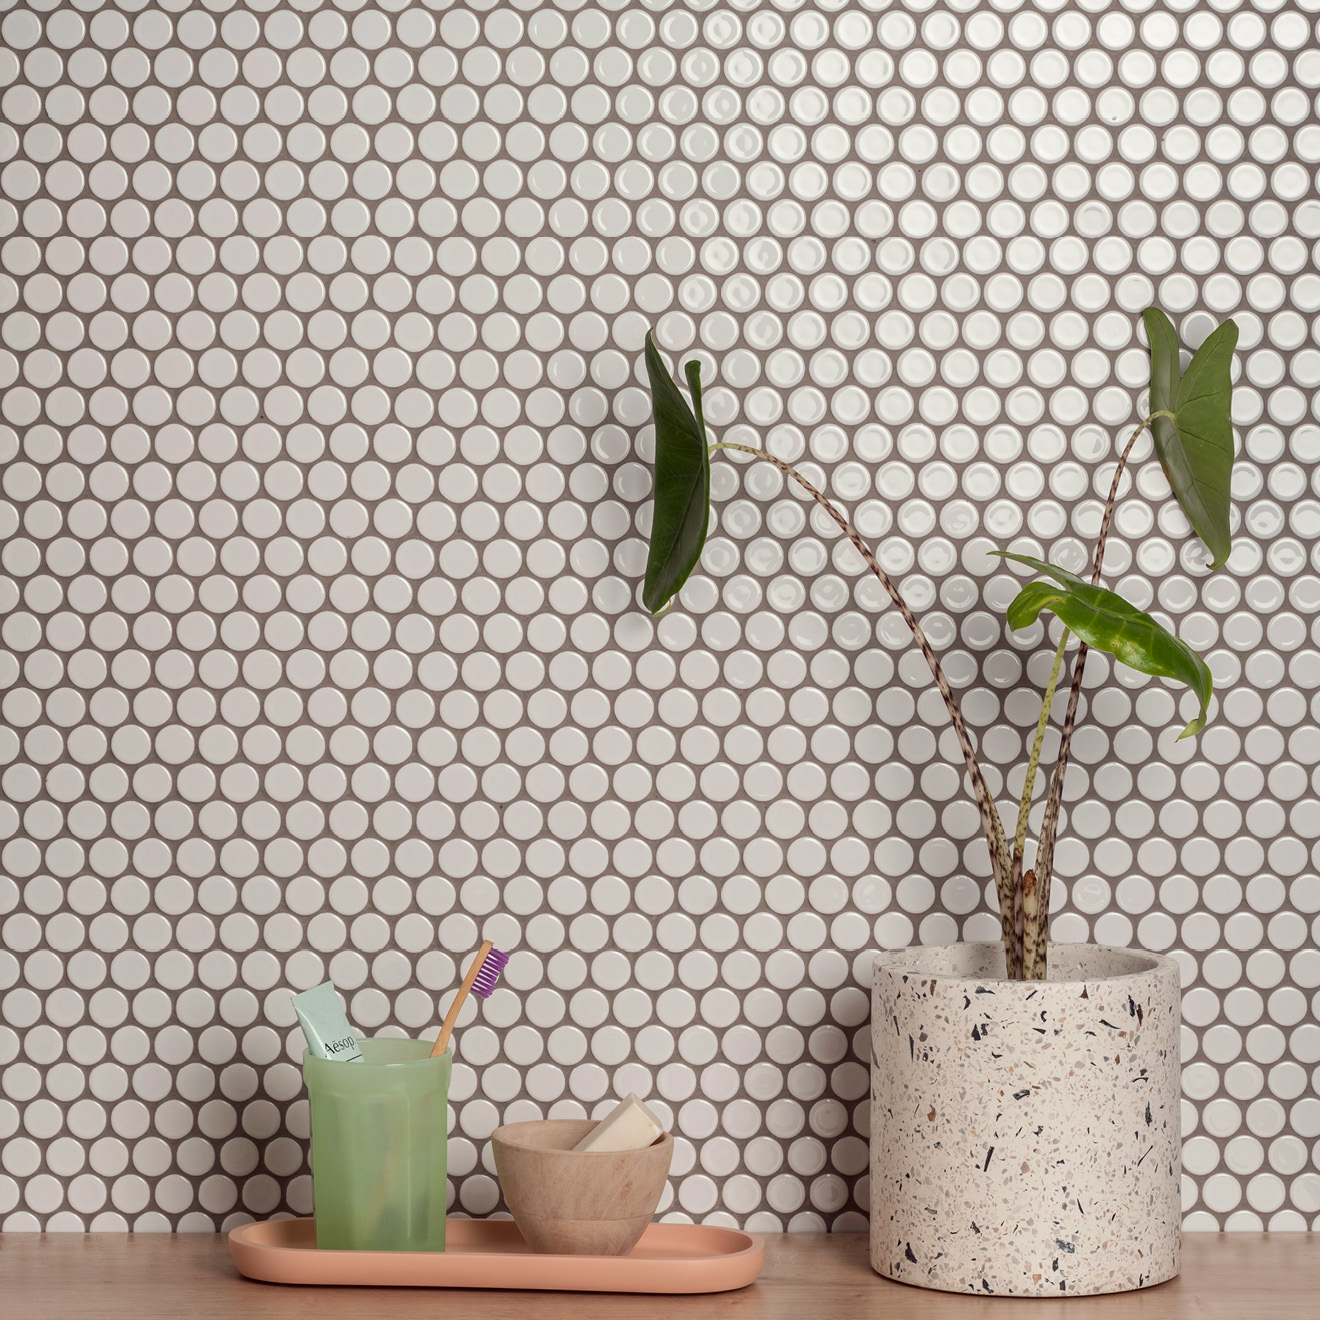 NEW Tile Designs for Modern Interiors